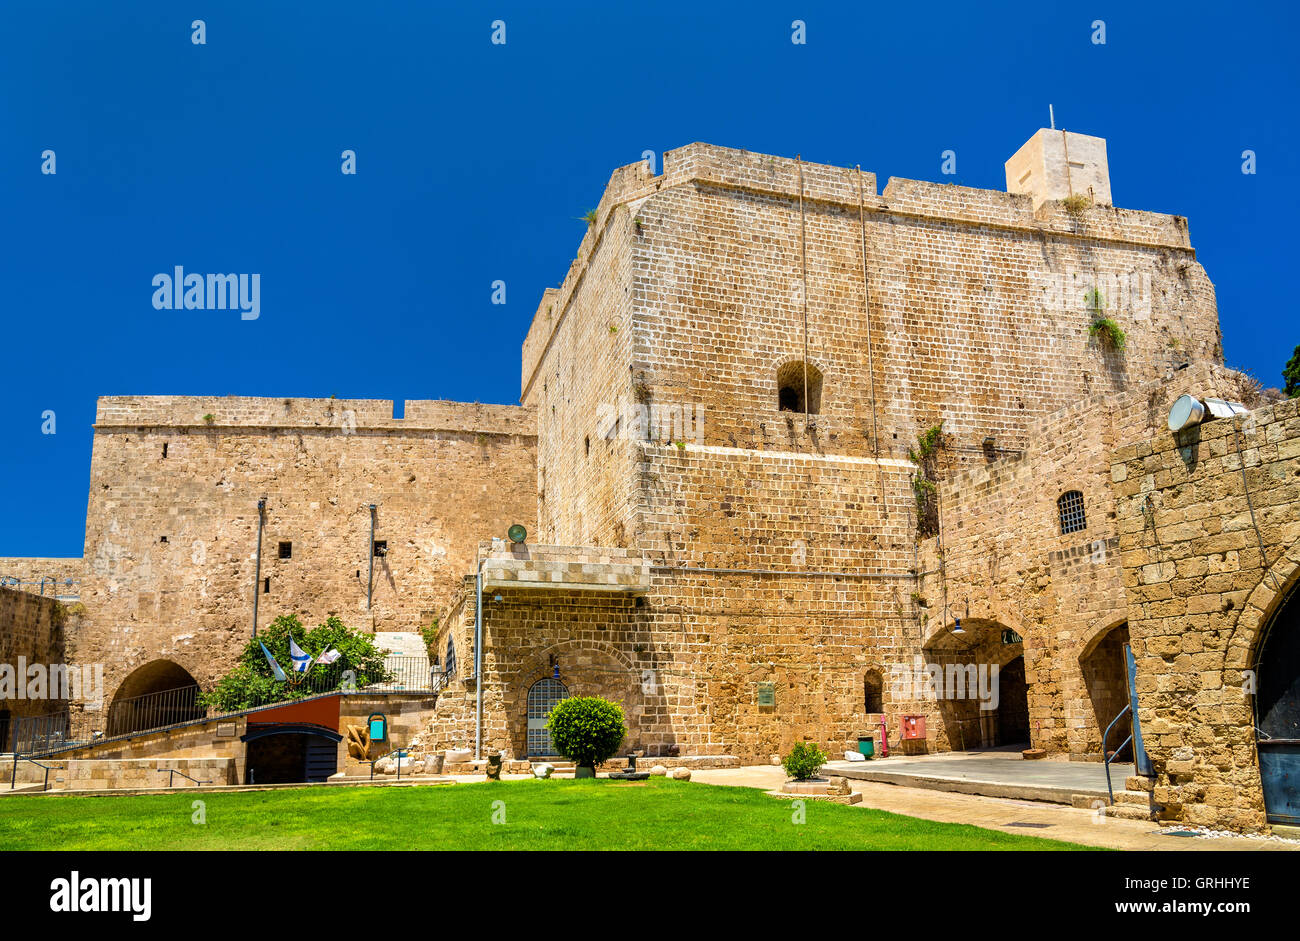 Zitadelle von Acre, eine osmanische Festung in Israel Stockfoto